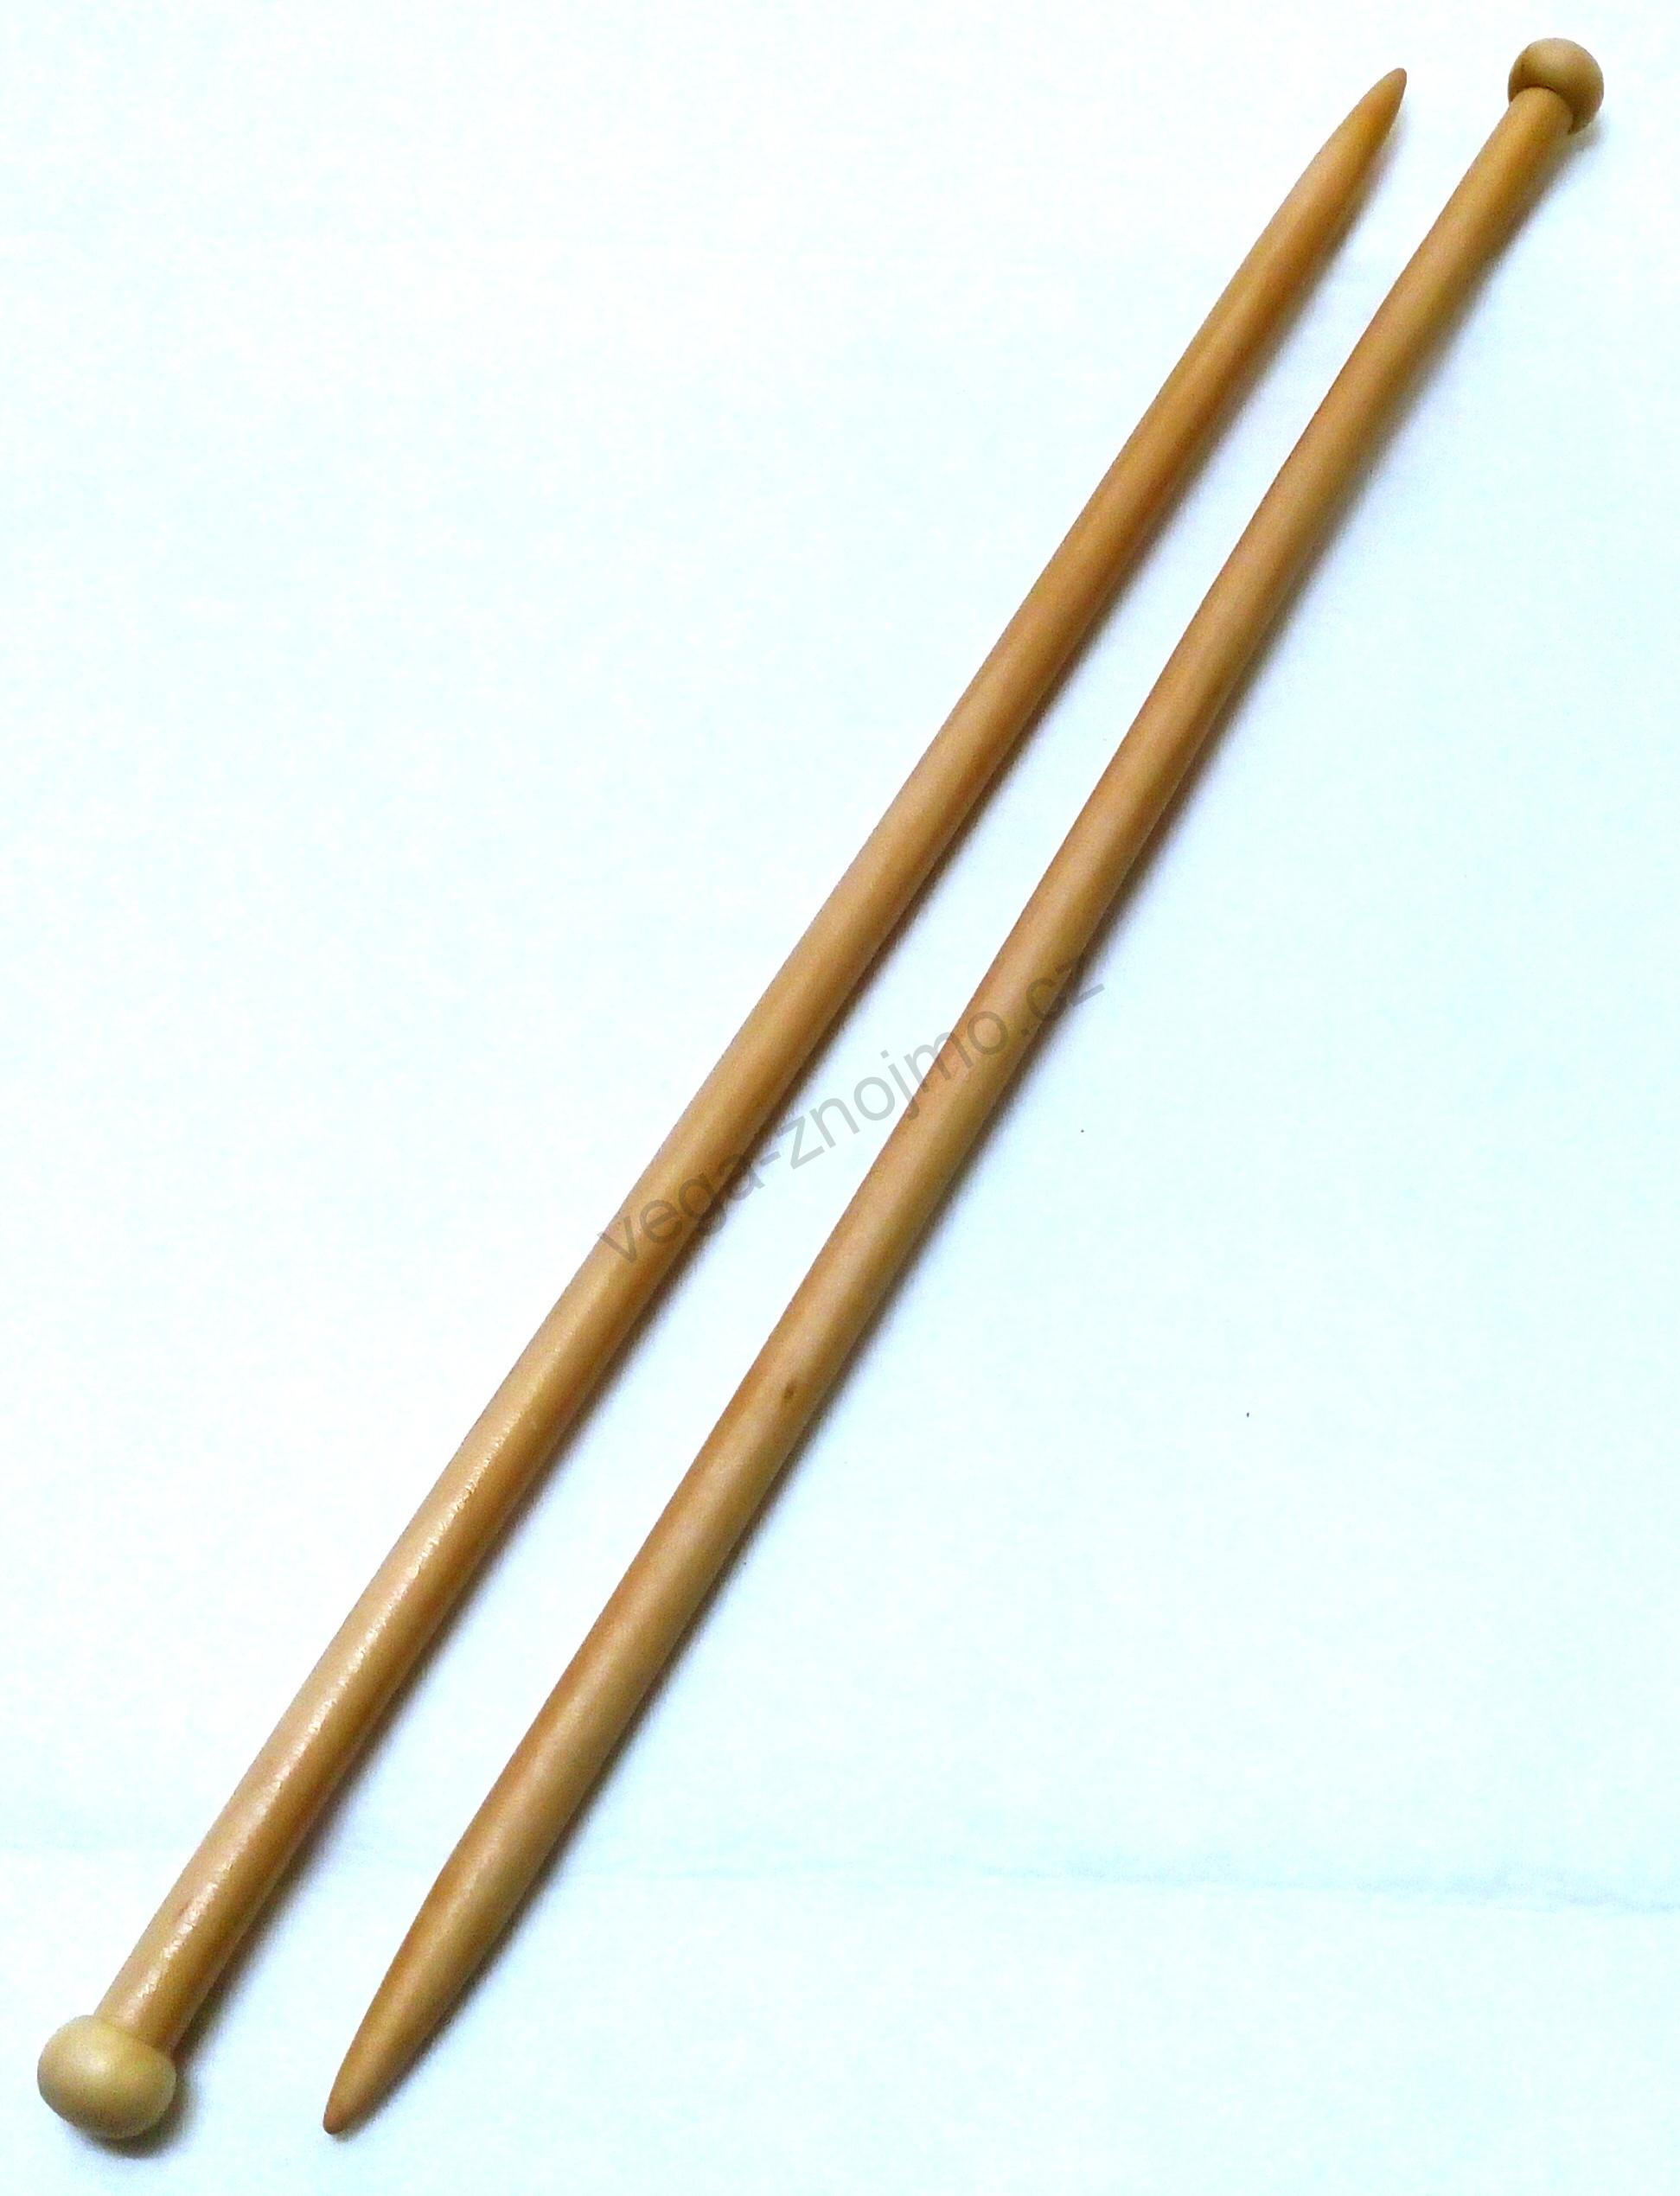 Jehlice dlouhé 35 cm, Dřevo, vel. 4,5